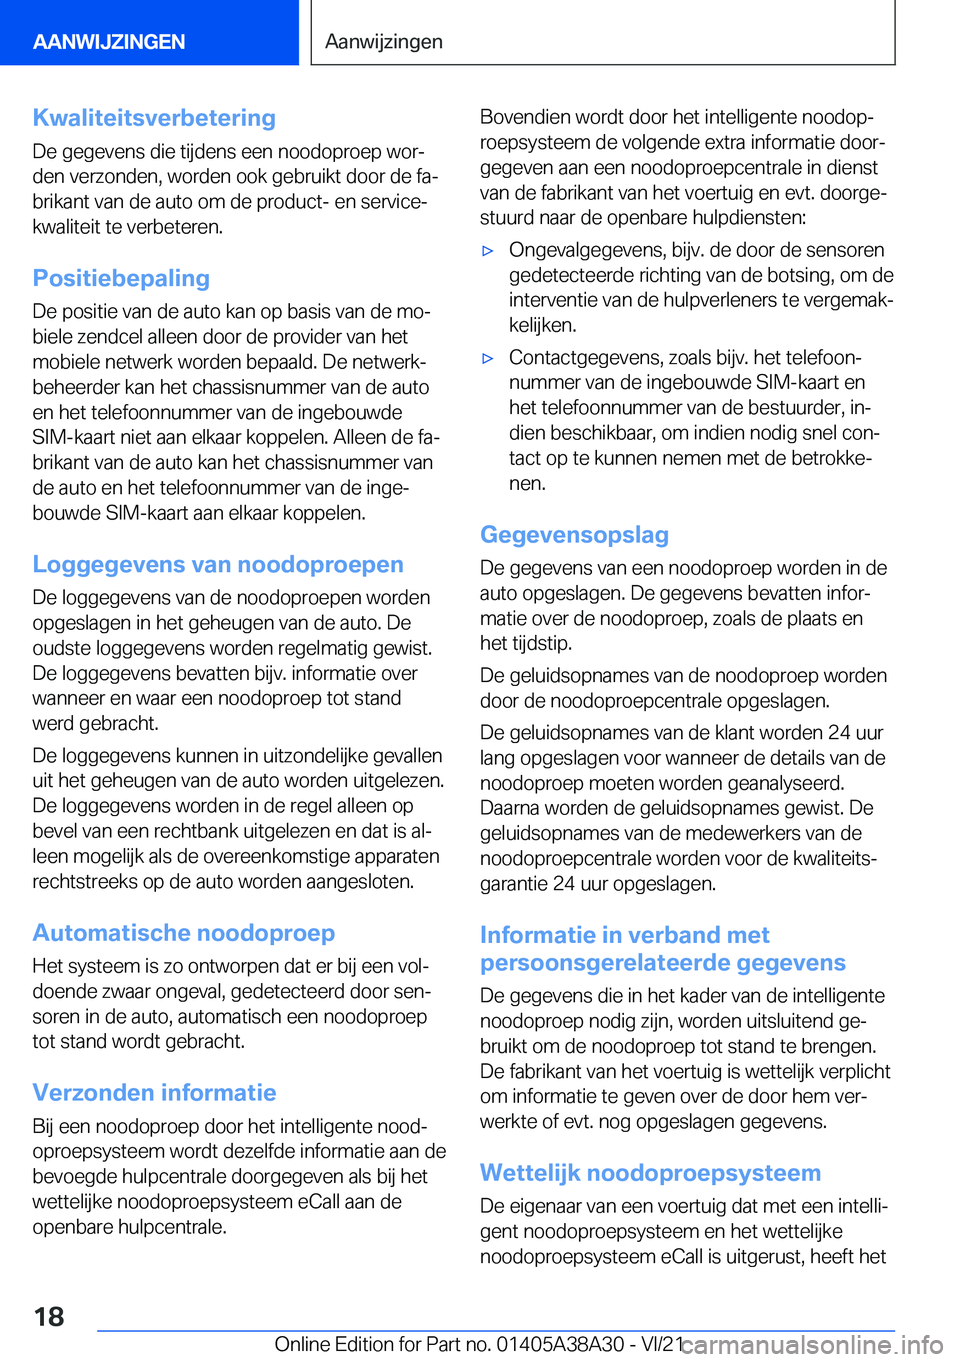 BMW 4 SERIES GRAN COUPE 2022  Instructieboekjes (in Dutch) �K�w�a�l�i�t�e�i�t�s�v�e�r�b�e�t�e�r�i�n�g
�D�e��g�e�g�e�v�e�n�s��d�i�e��t�i�j�d�e�n�s��e�e�n��n�o�o�d�o�p�r�o�e�p��w�o�rj �d�e�n��v�e�r�z�o�n�d�e�n�,��w�o�r�d�e�n��o�o�k��g�e�b�r�u�i�k�t�